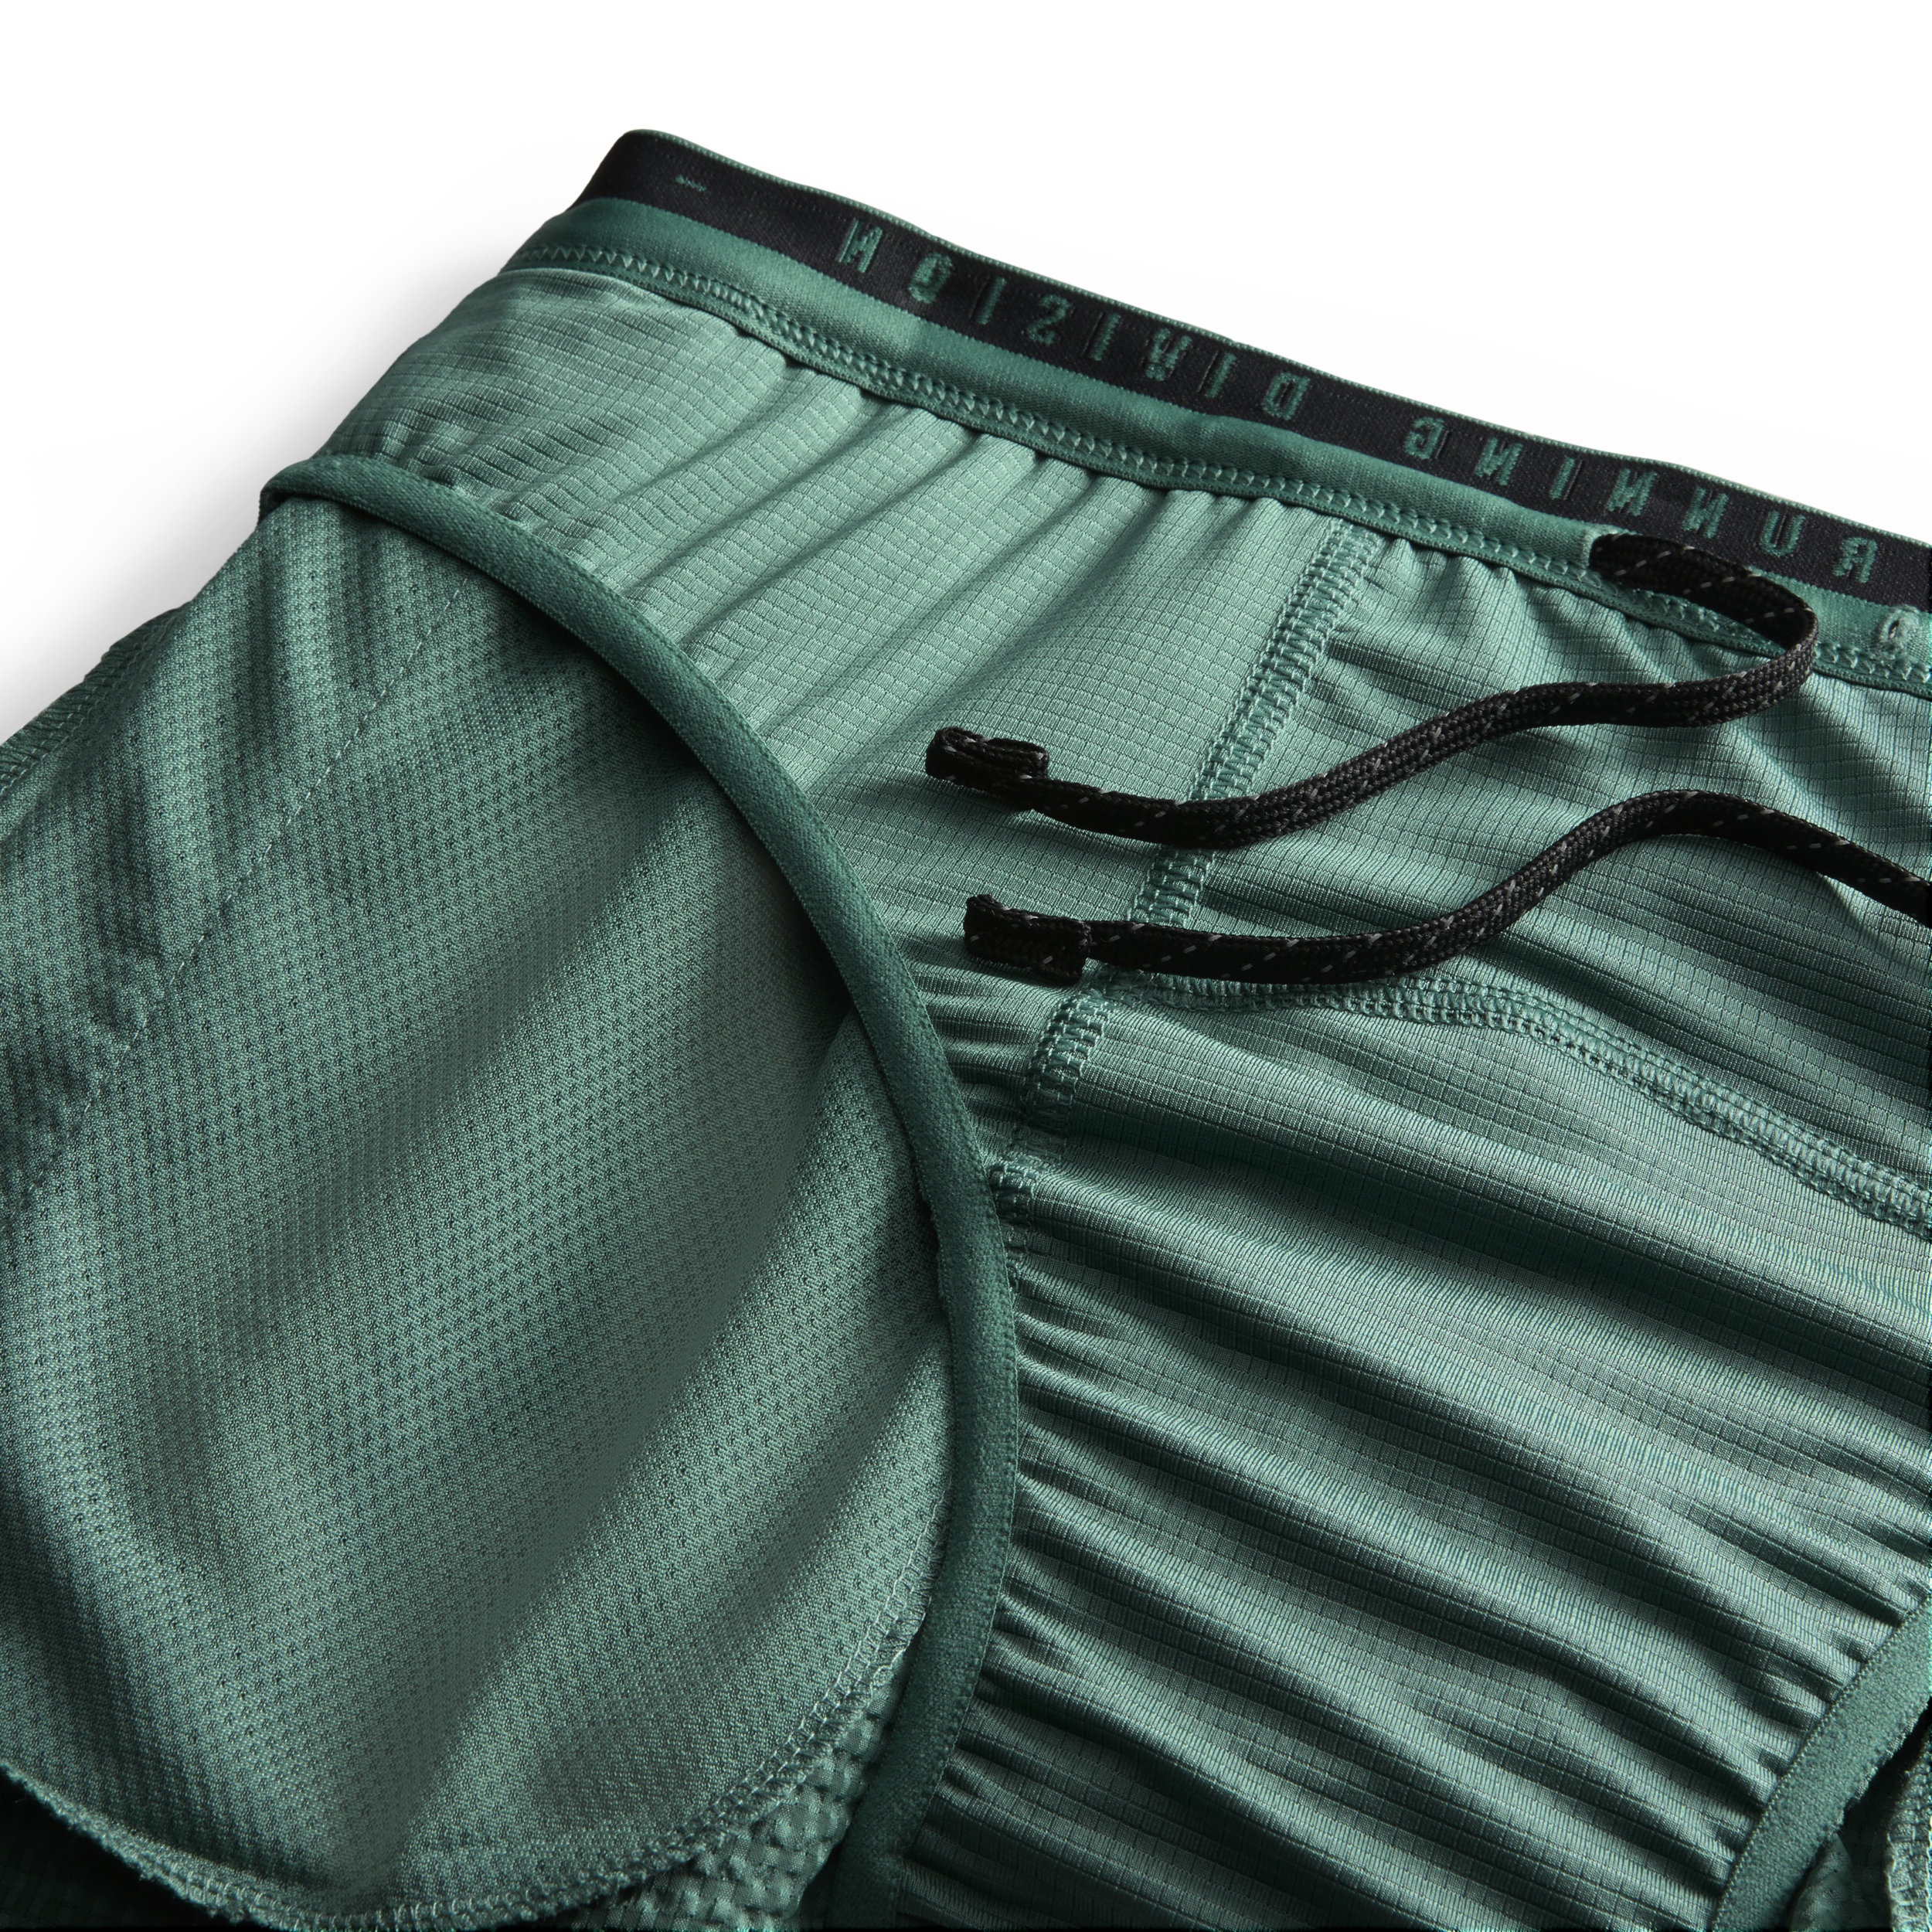 Nike Running Division Dri-FIT ADV hardloopshorts met binnenbroek voor heren (10 cm) Groen